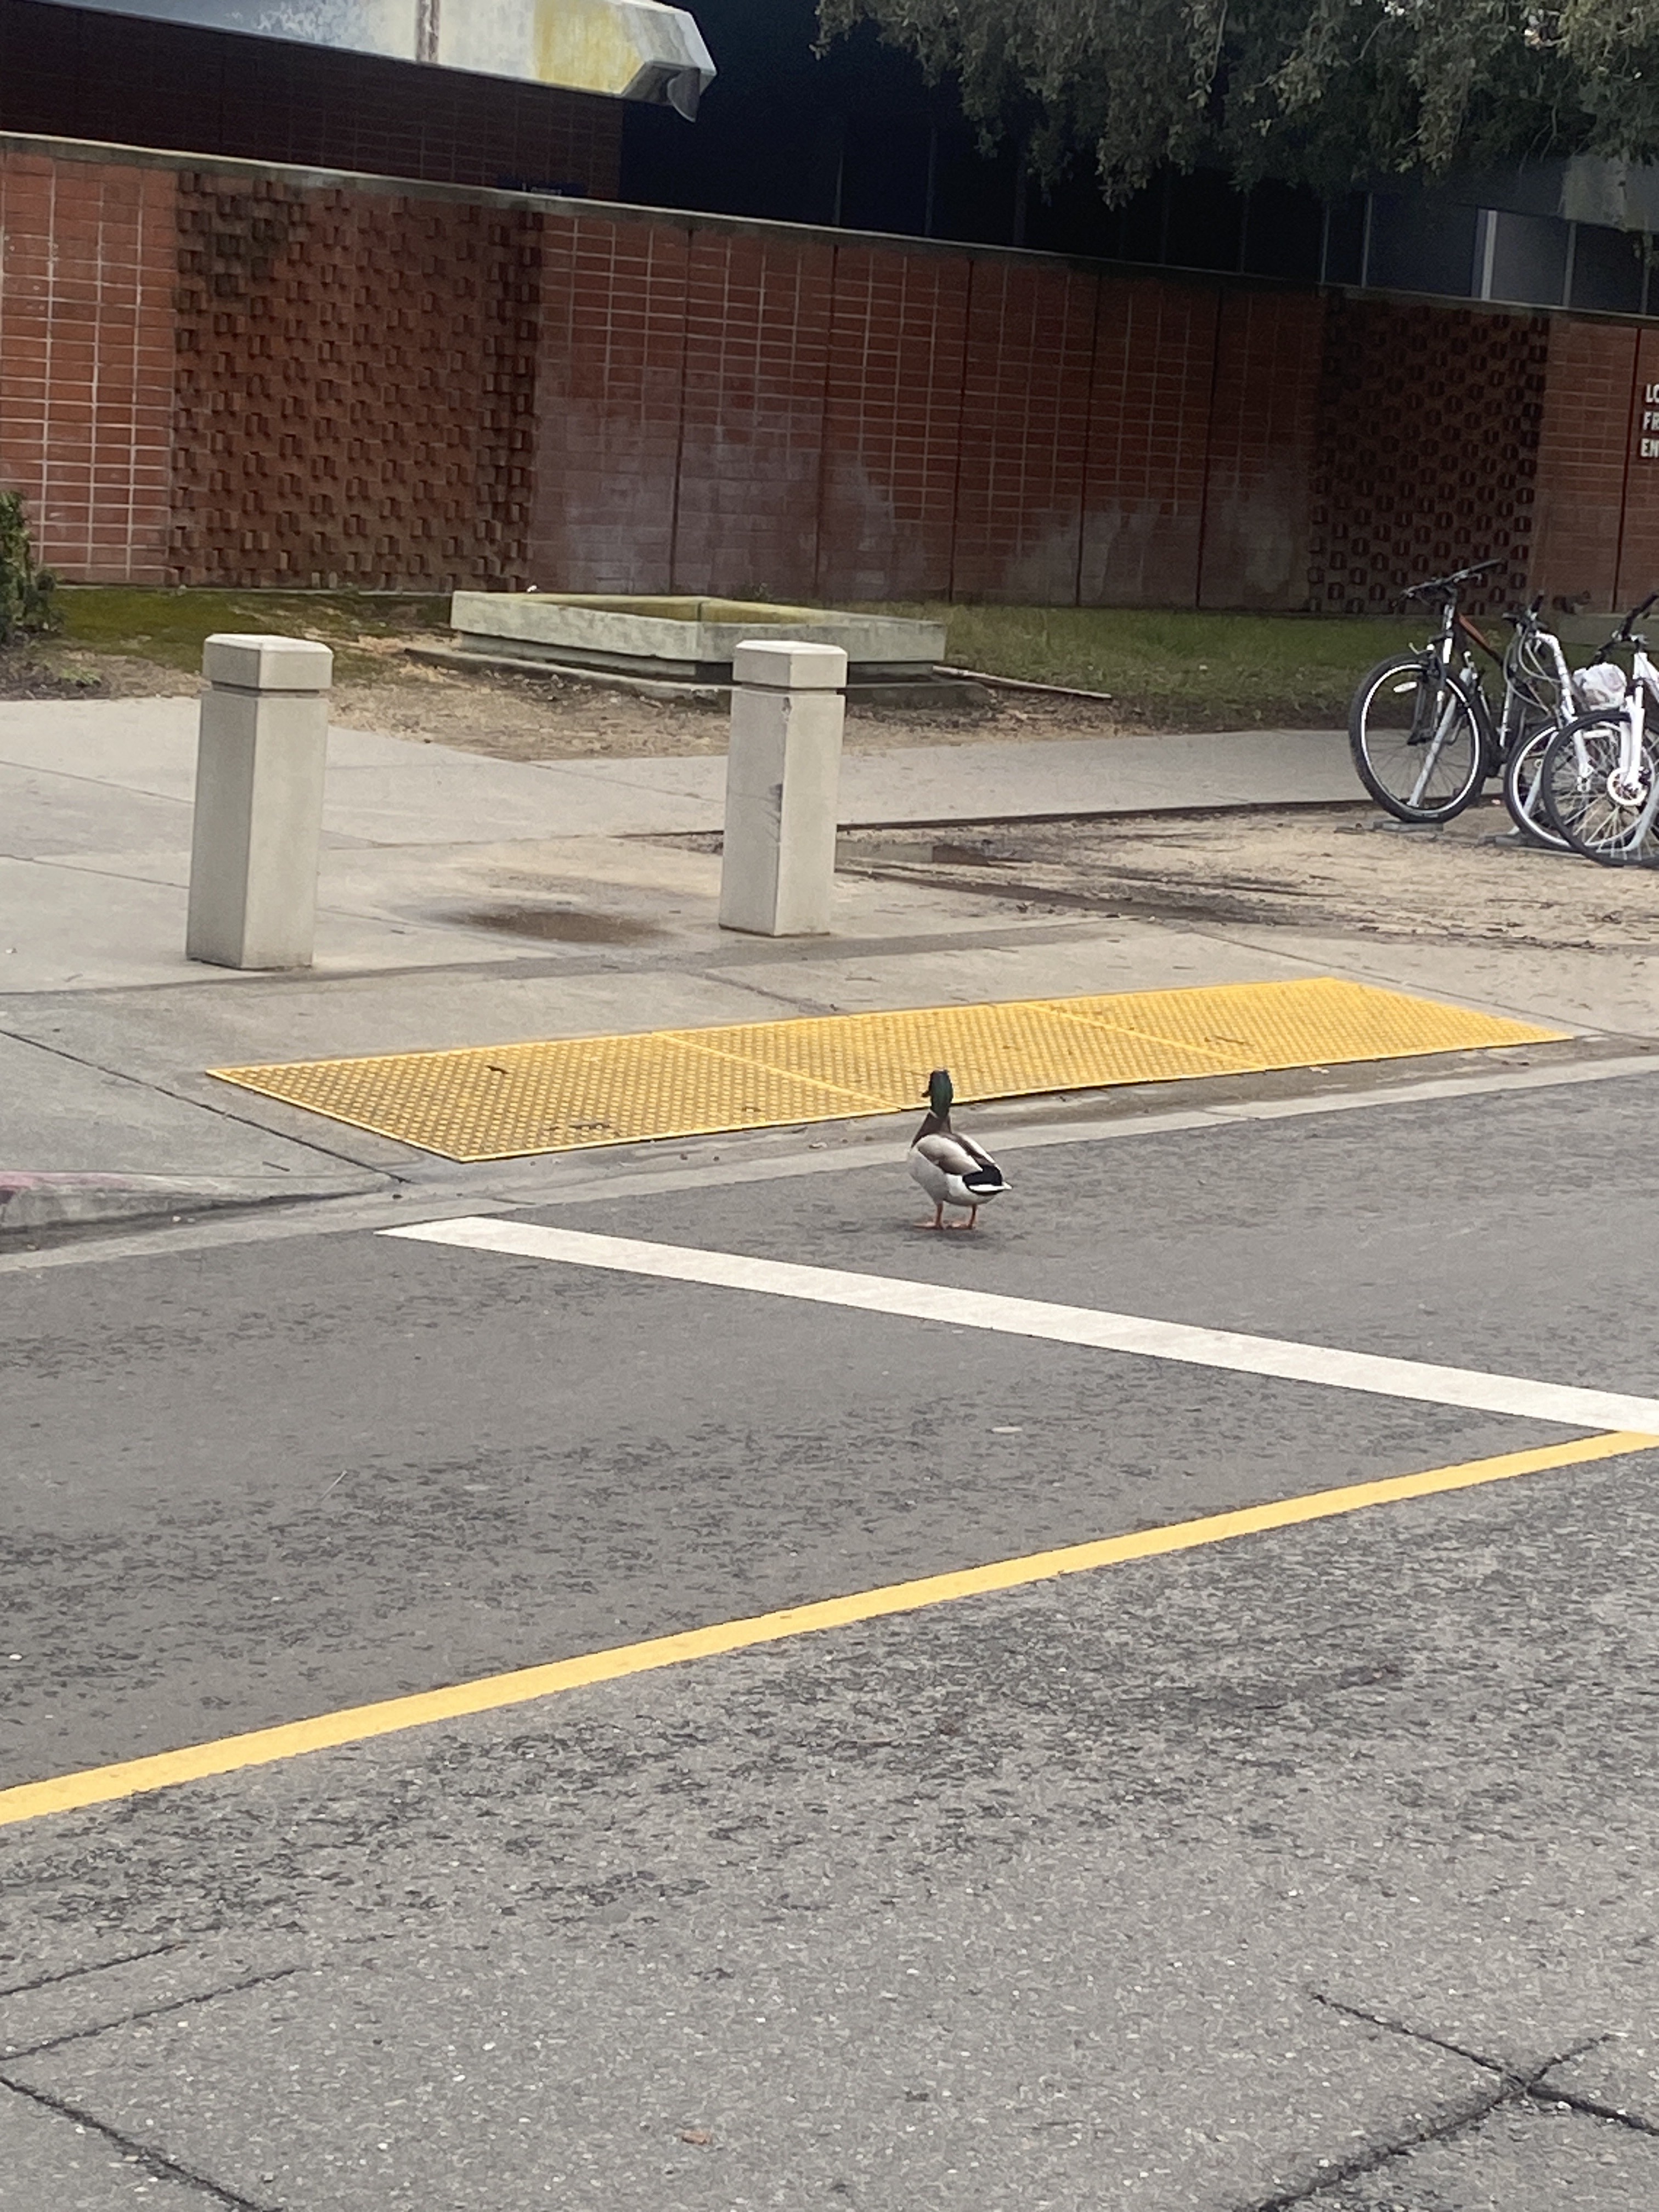 Duck wandering around campus